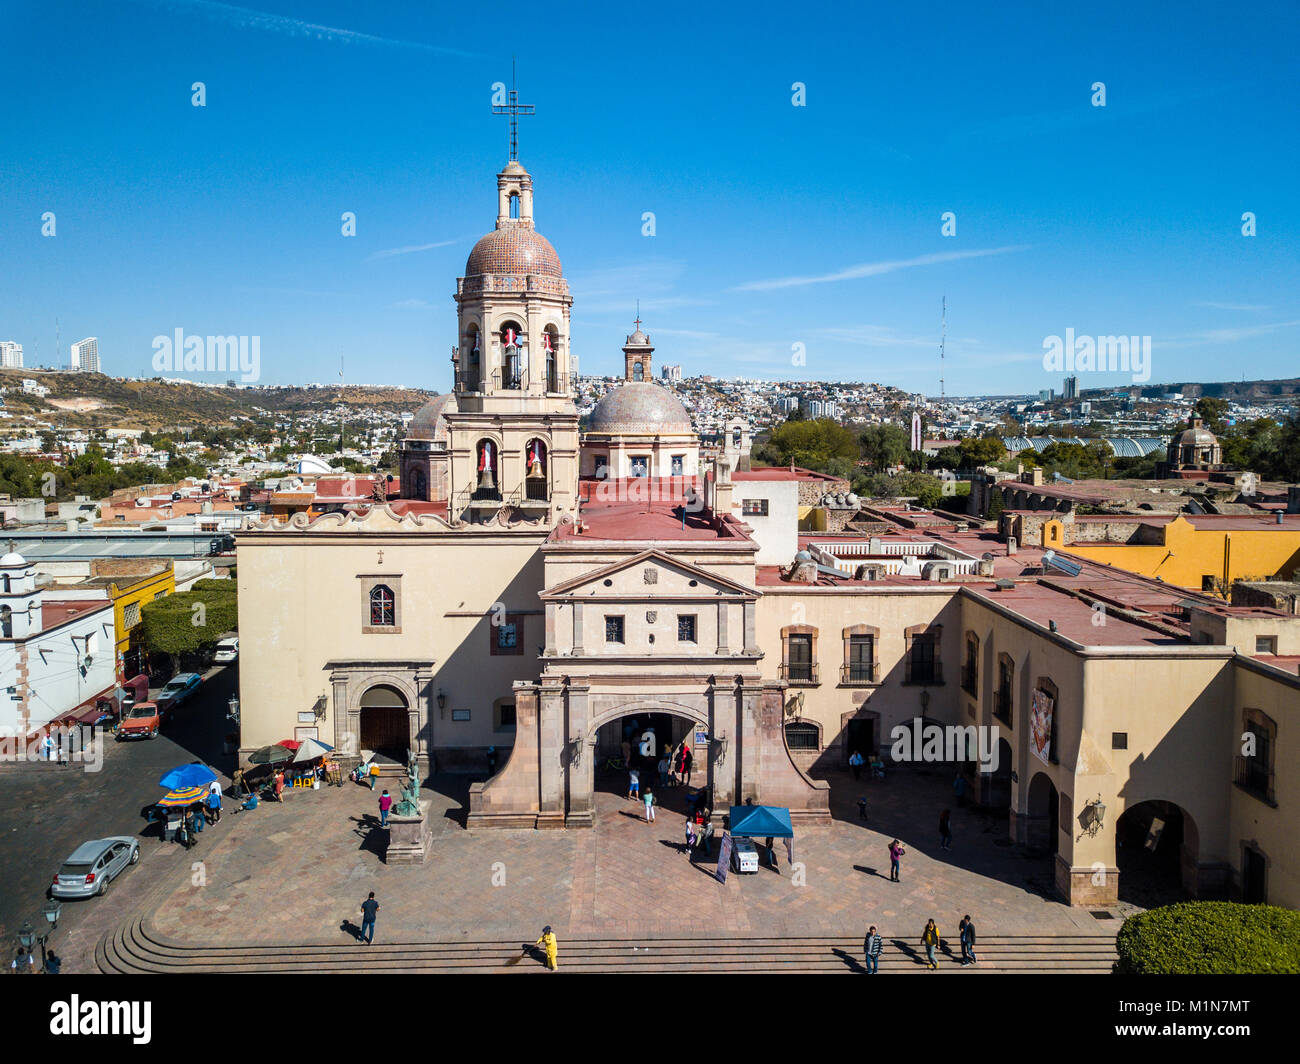 Templo y ex convento de la Cruz, or Temple and Convent of the Holy Cross, Queretaro, Mexico Stock Photo